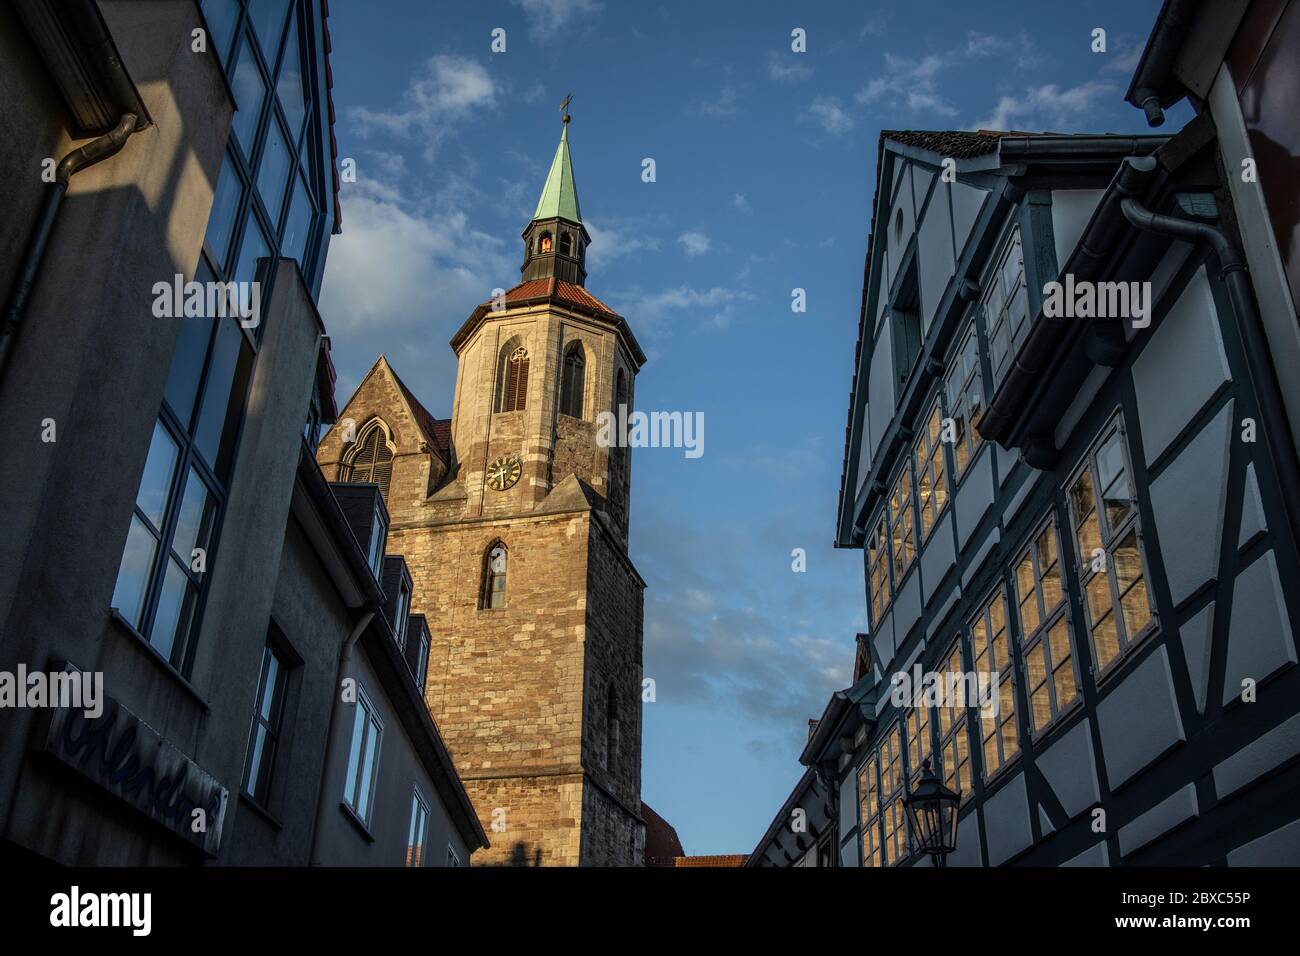 Braunschweig, bekannt als Braunschweig und die "Stadt Heinrich des Löwen" in englischer Sprache, liegt im niedersächsischen Staatsgebiet von Nord-Mitteldeutschland, Europa Stockfoto